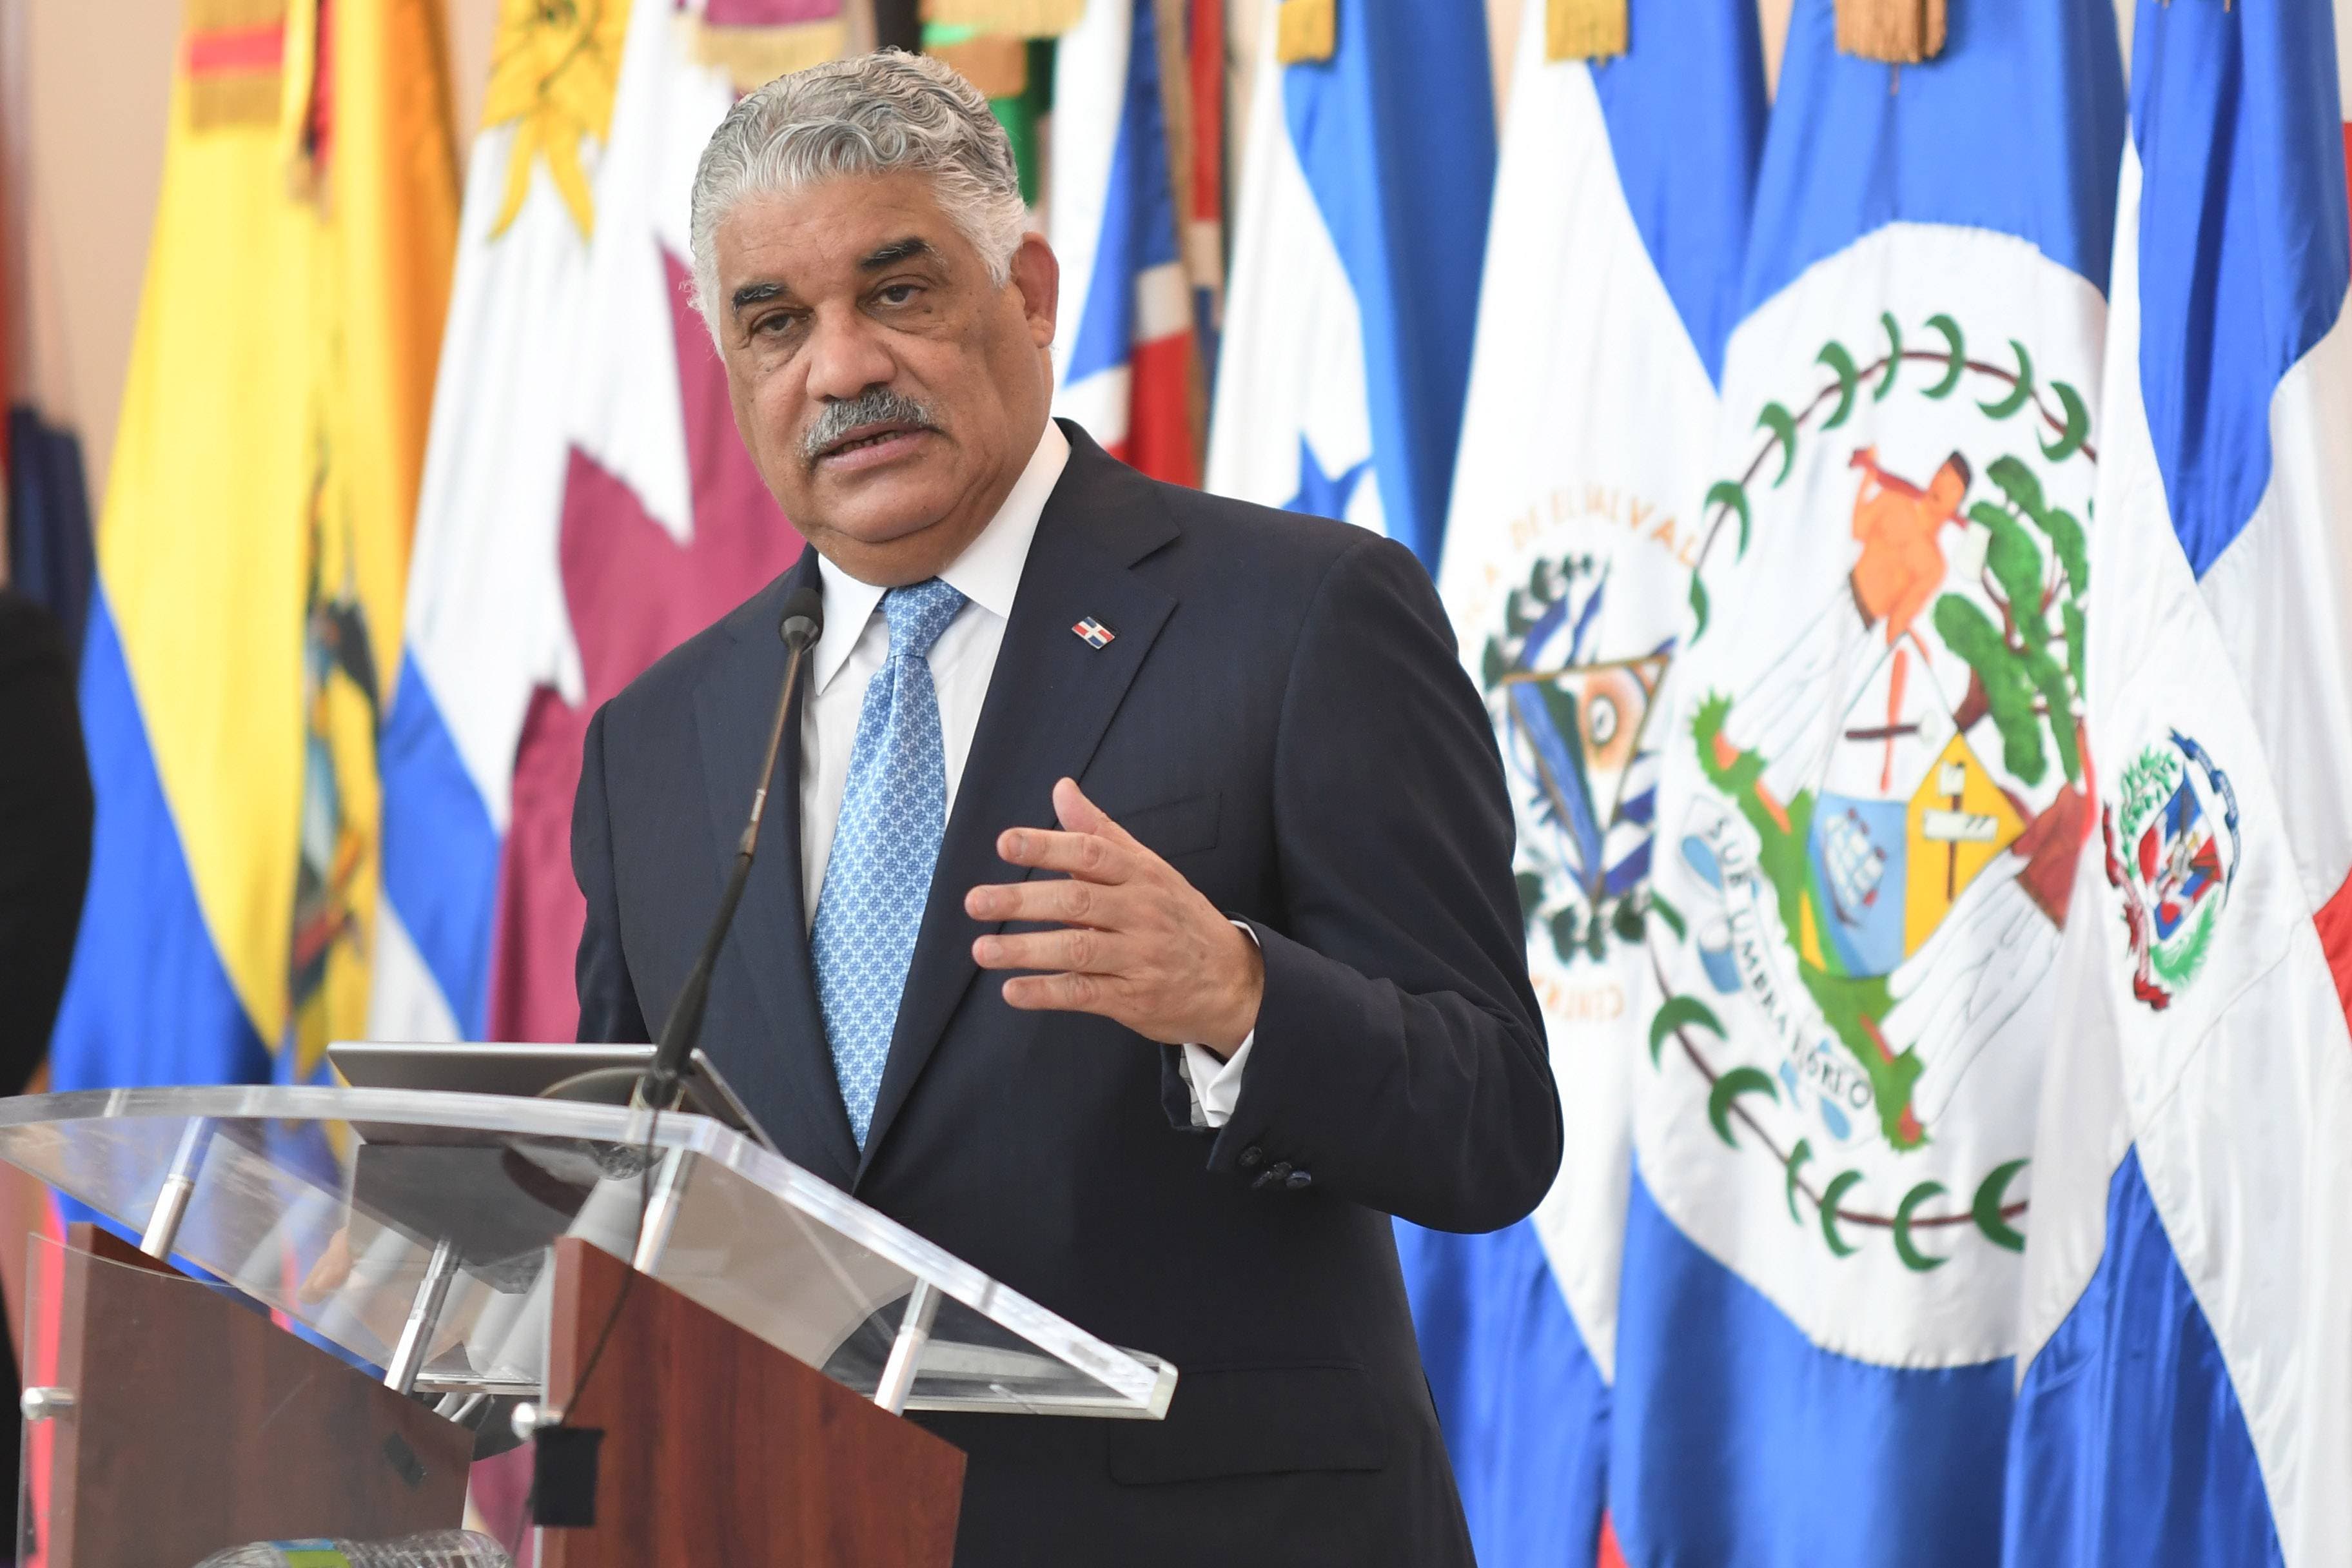 República Dominicana sale al frente y responde a Cuba denuncia grave sobre Venezuela